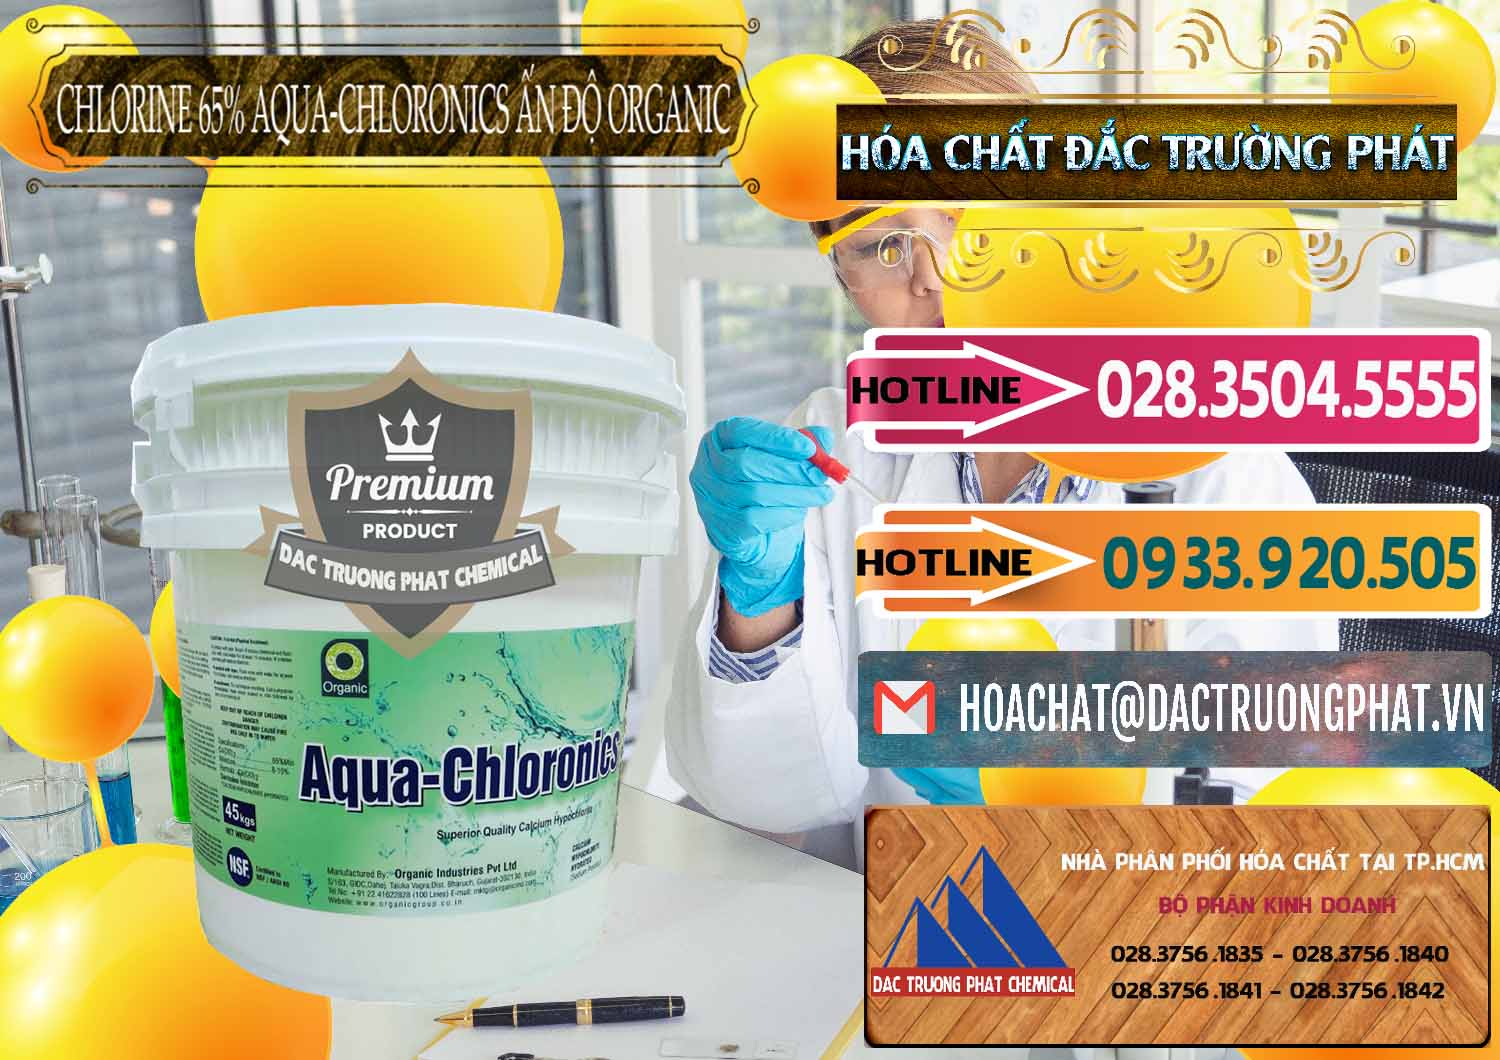 Cty chuyên phân phối _ bán Chlorine – Clorin 65% Aqua-Chloronics Ấn Độ Organic India - 0210 - Cty chuyên bán - cung cấp hóa chất tại TP.HCM - dactruongphat.vn